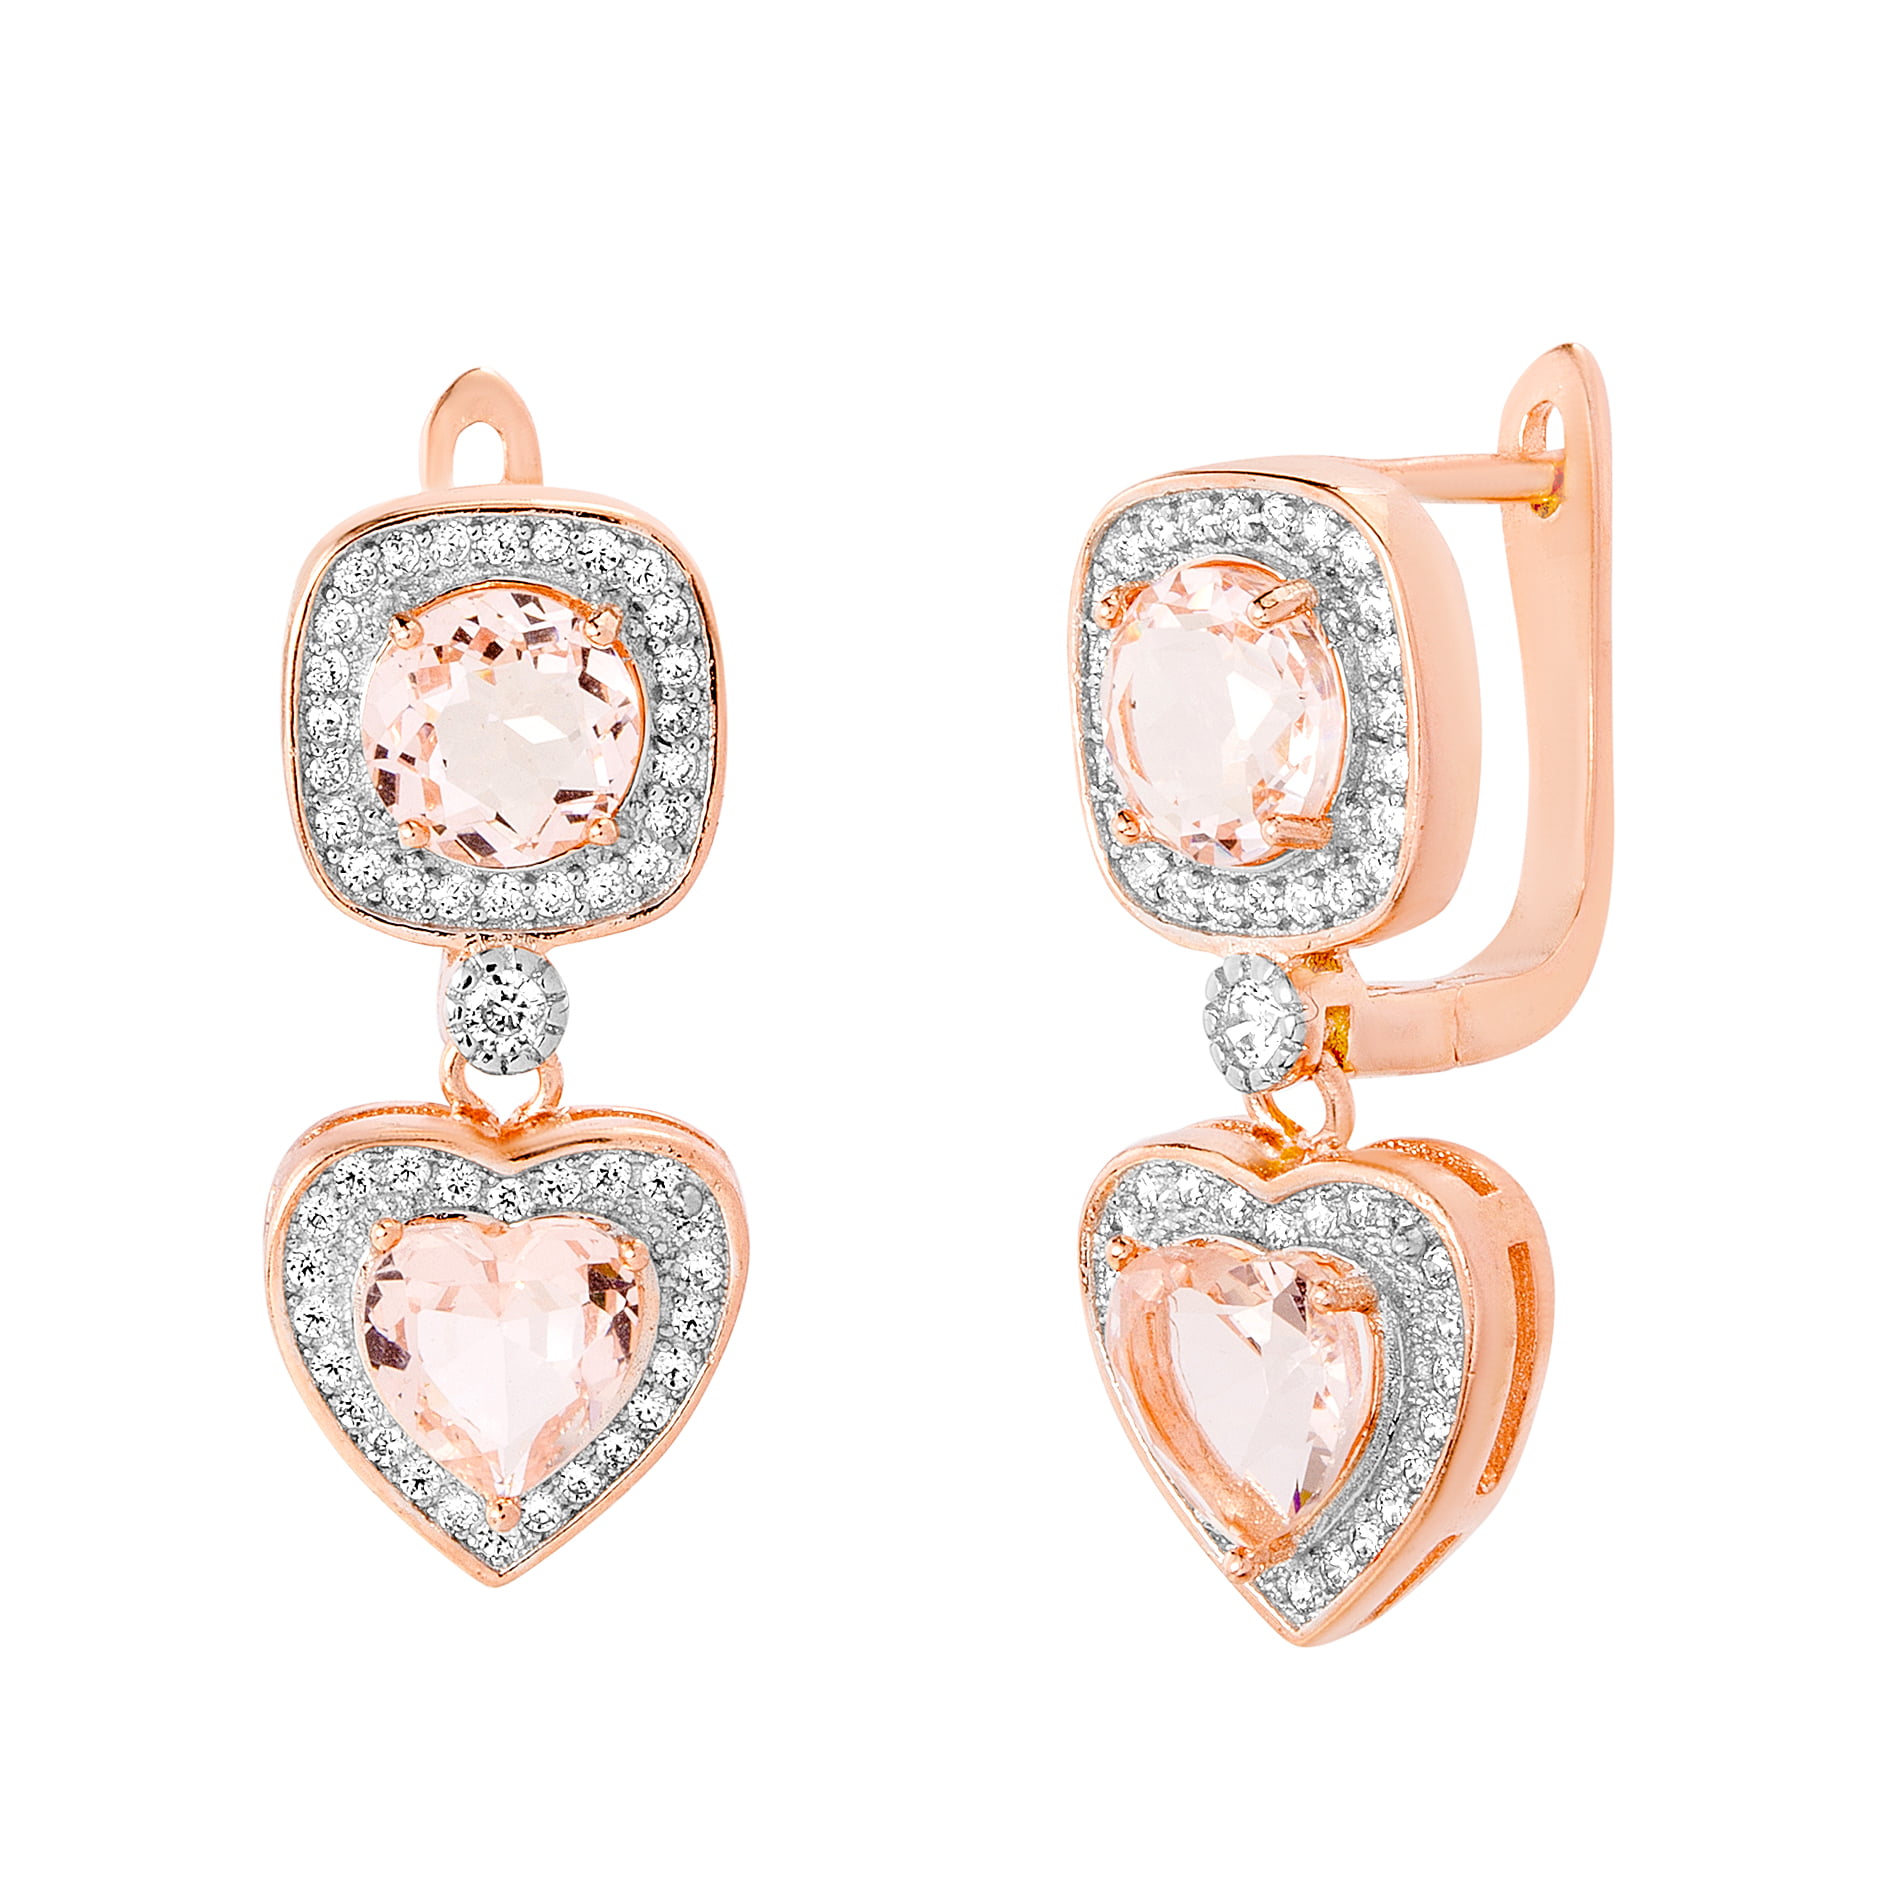 Epinki Stainless Steel Women Earrings Heart Earrings With White Cubic Zirconia